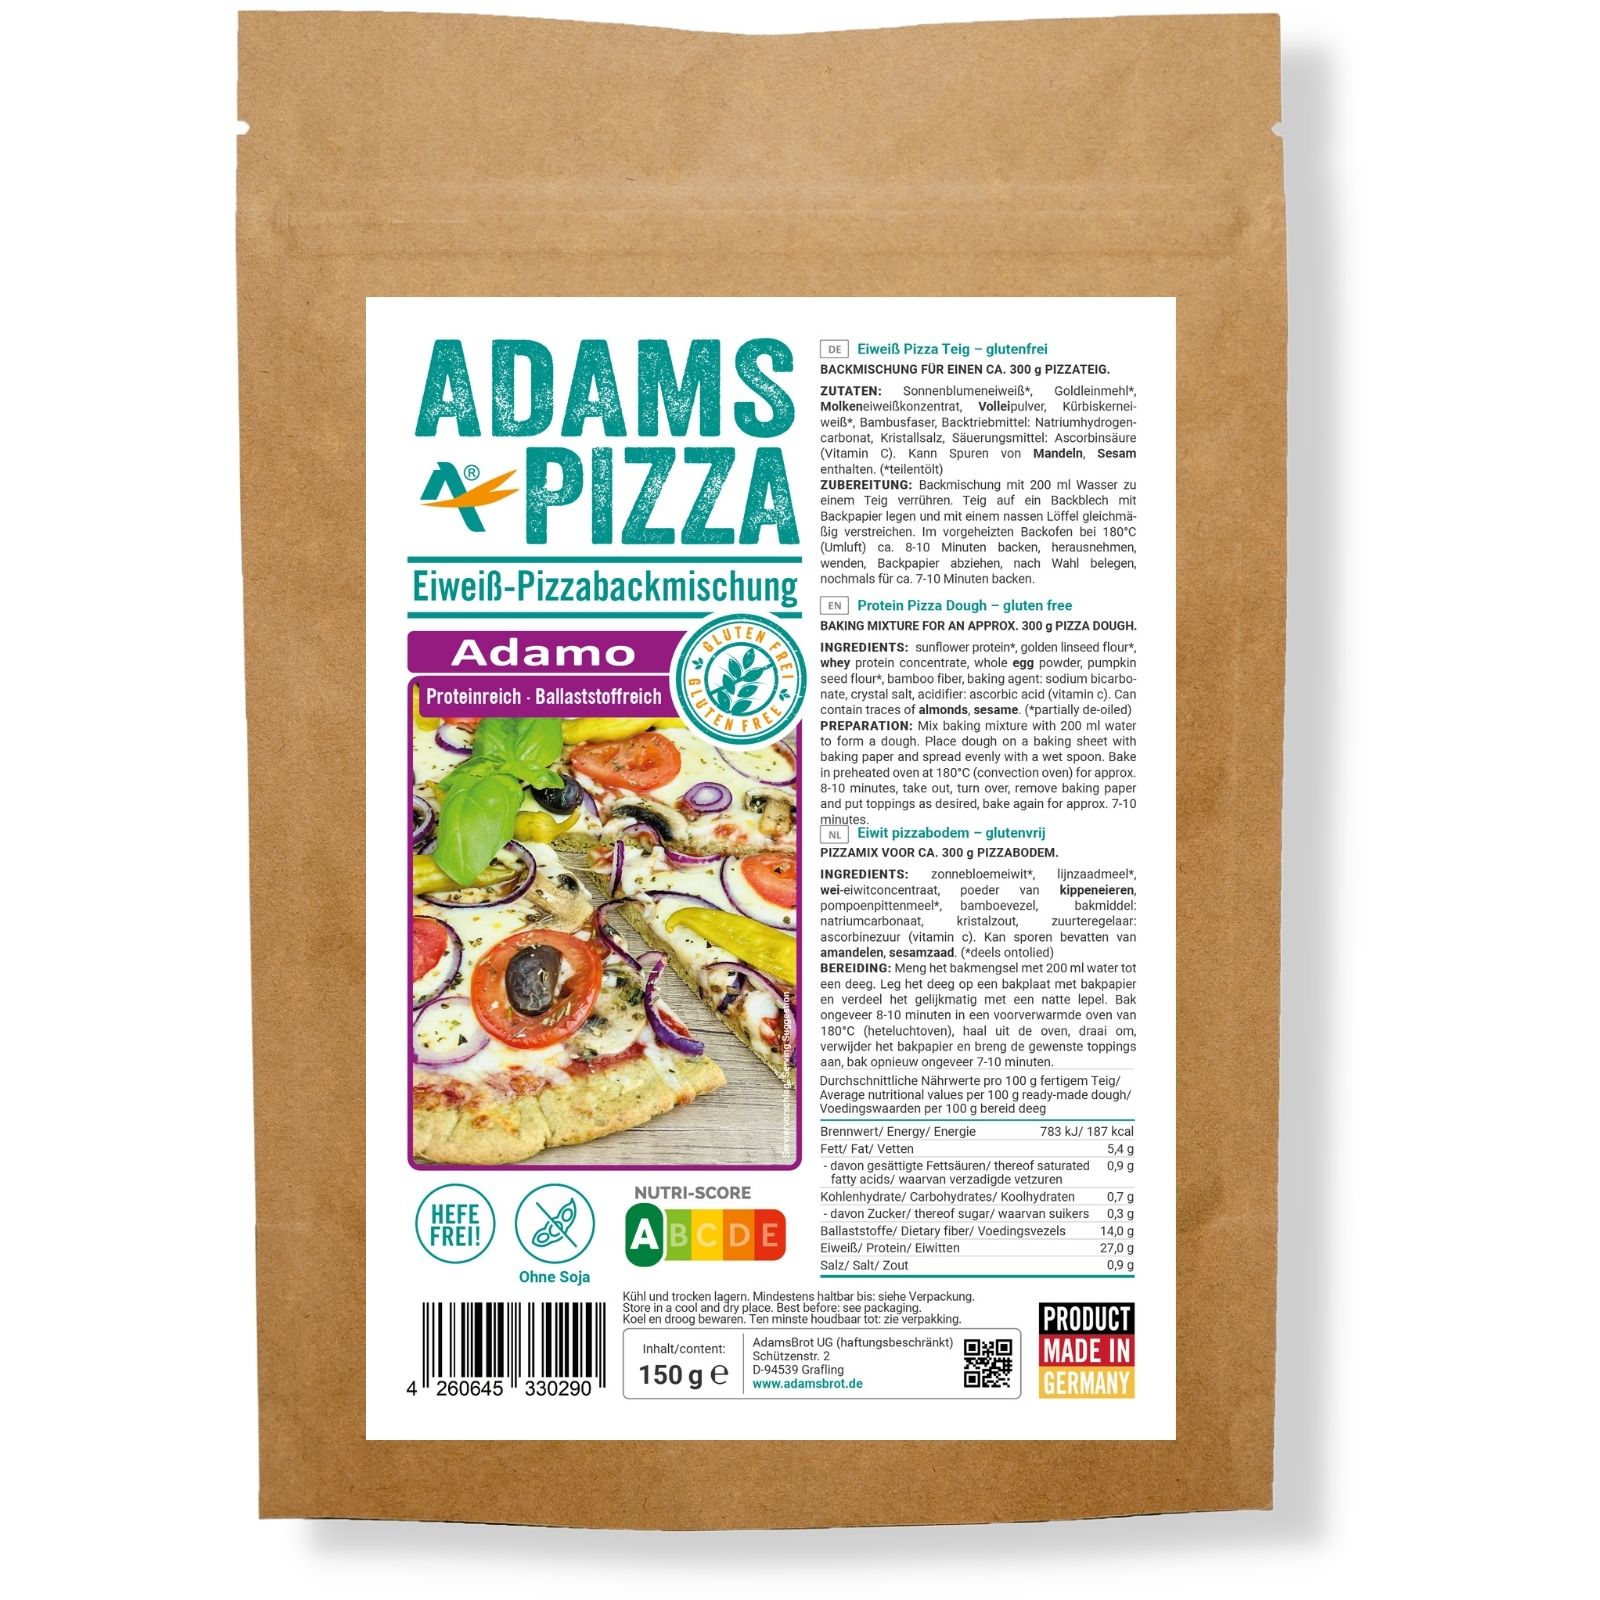 Frontale Aufnahme von unserem glutenfreien, ketogenen und eiweißreichen Produkt, mit dem Namen "Pizza Backmischung Adamo"